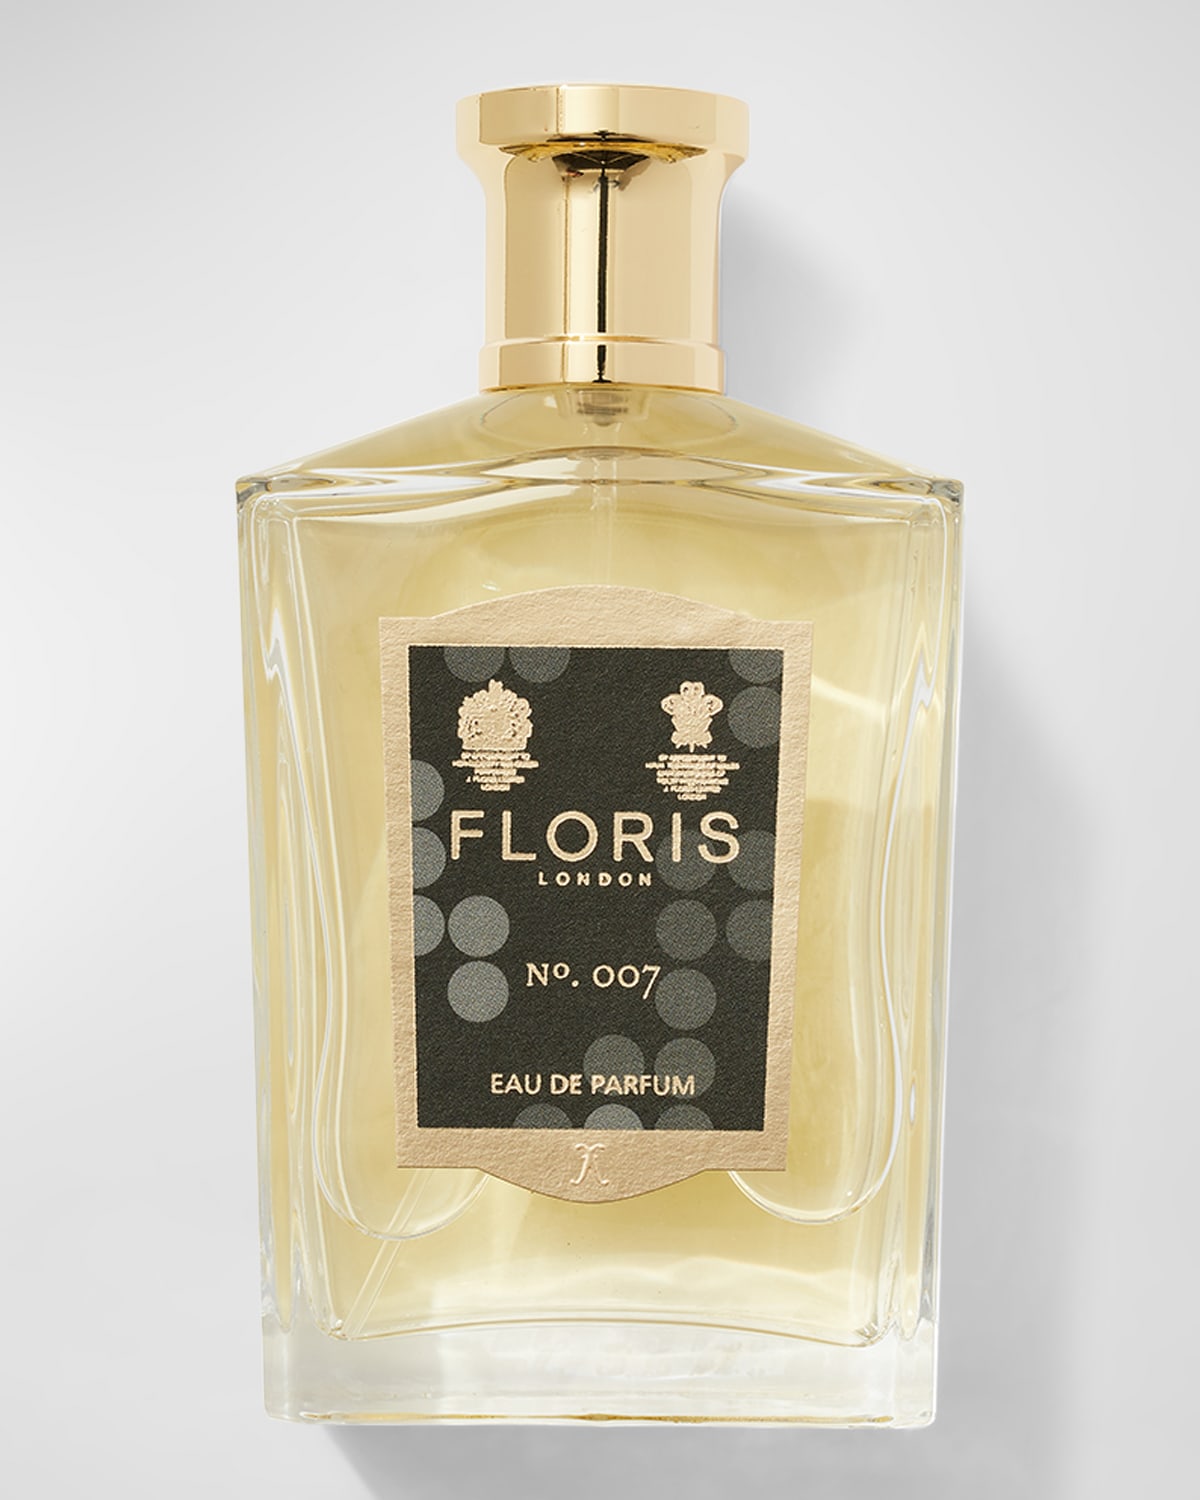 Floris London No. 007 Eau de Parfum, 3.4 oz.